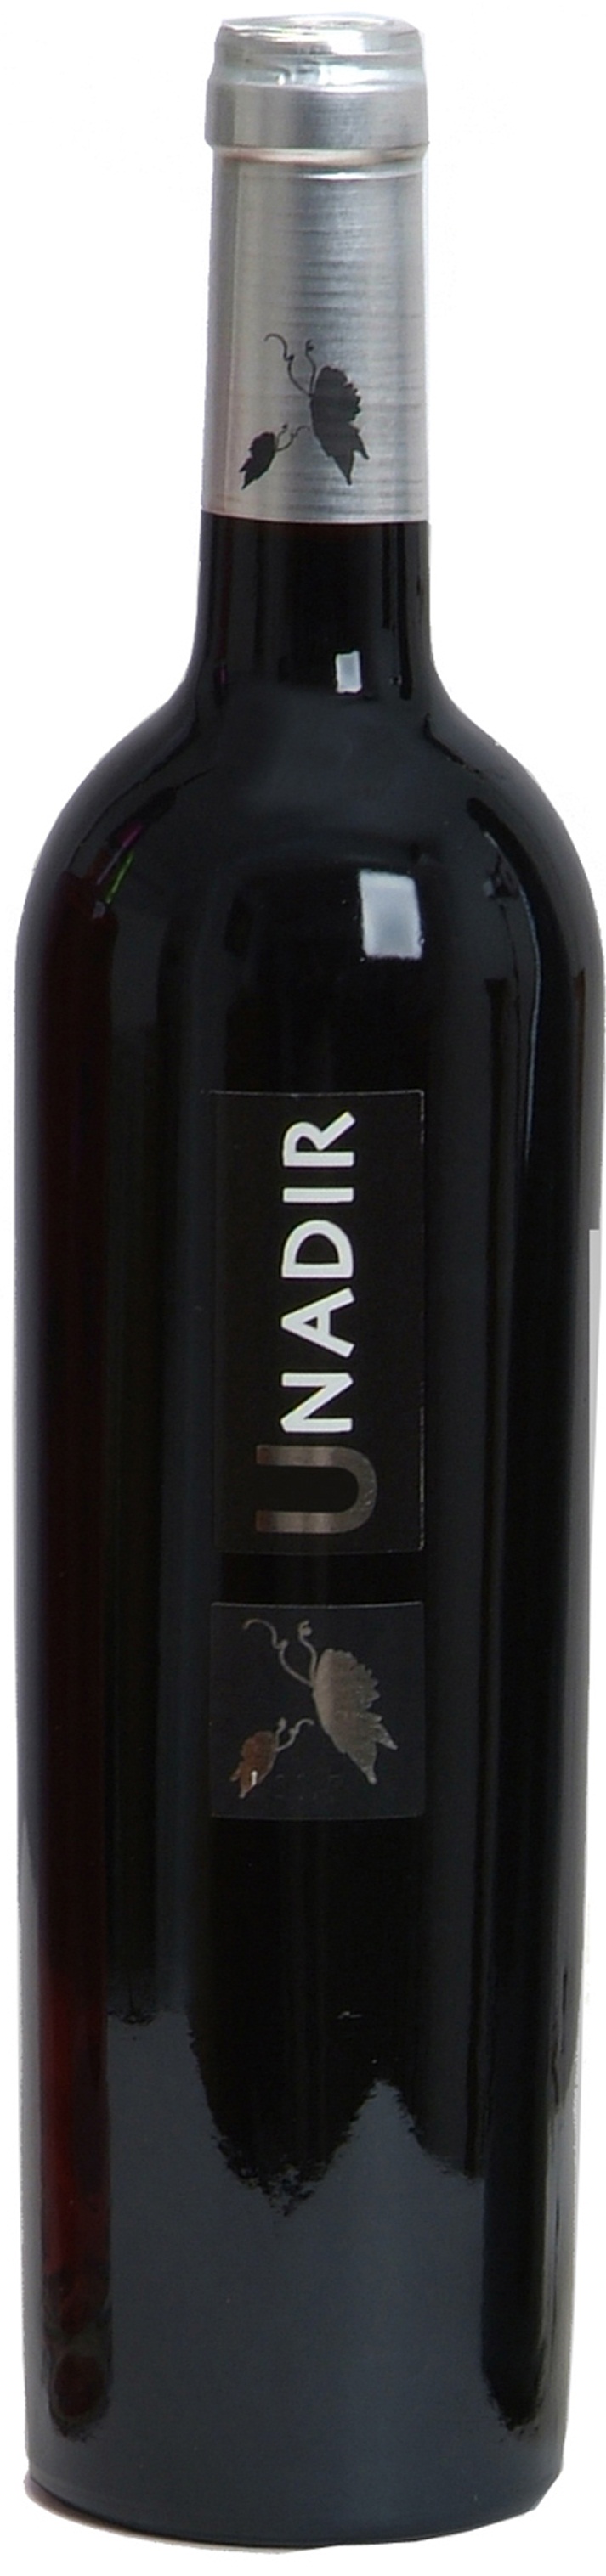 Logo del vino Unadir Tinto Roble